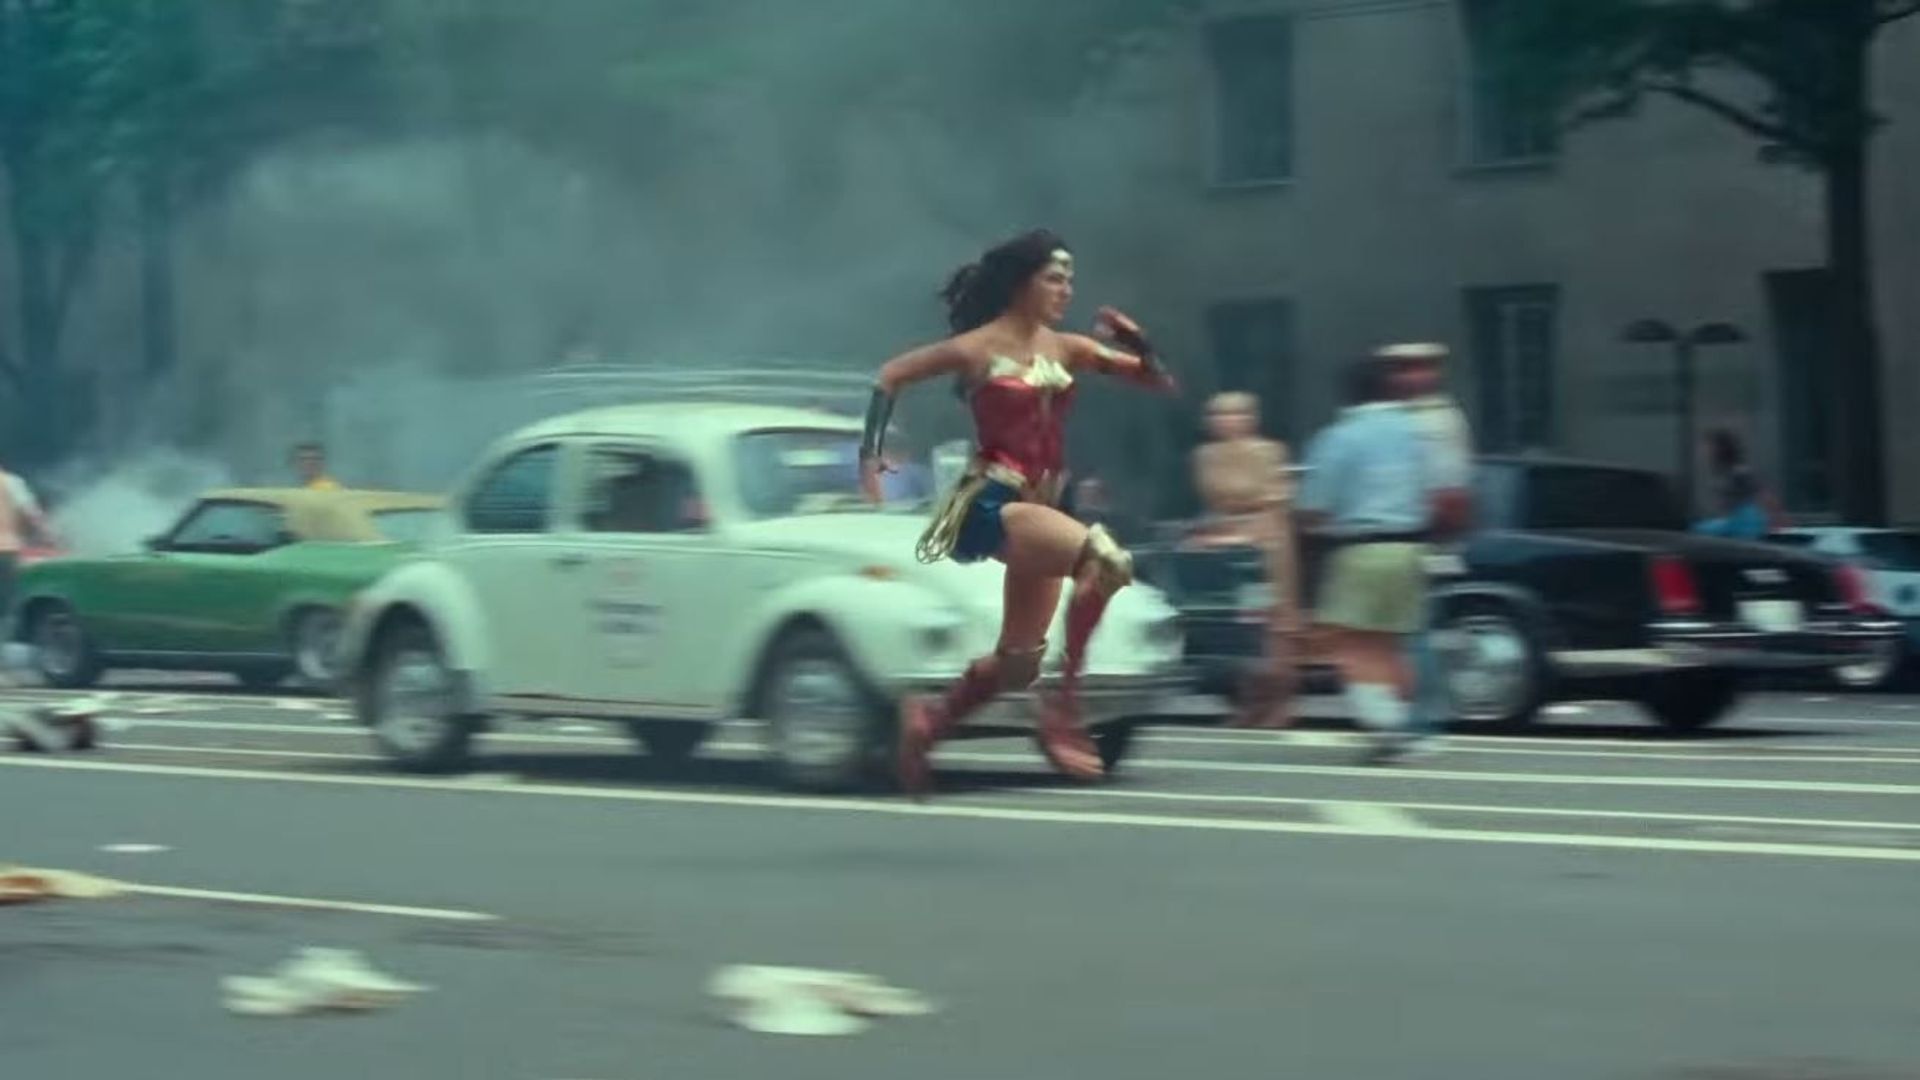 "Wonder Woman 1984" de Patty Jenkins sortira en Belgique le 3 juin 2020, après avoir été repoussé de sept mois par Warner Bros.